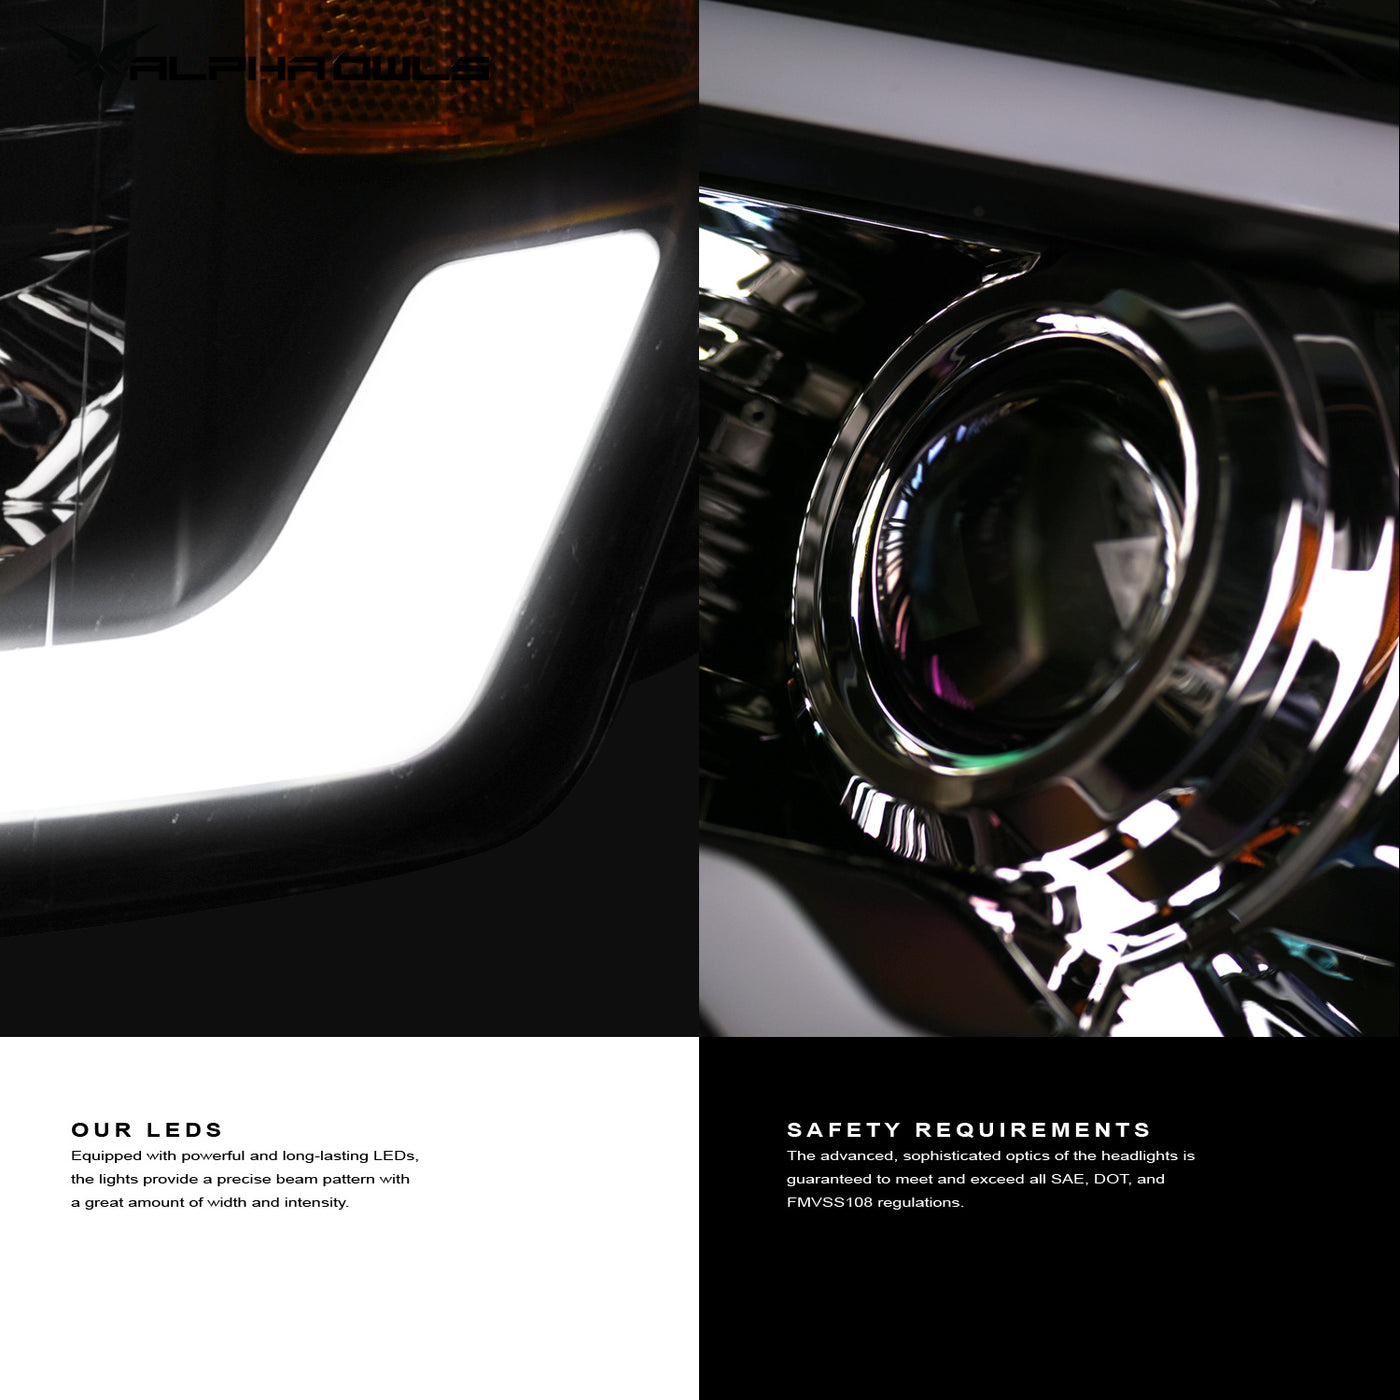 Alpha Owls Headlights, Projector Headlights, Ford Projector Headlights, F-150 Projector Headlights, 2004-2008 Projector Headlights